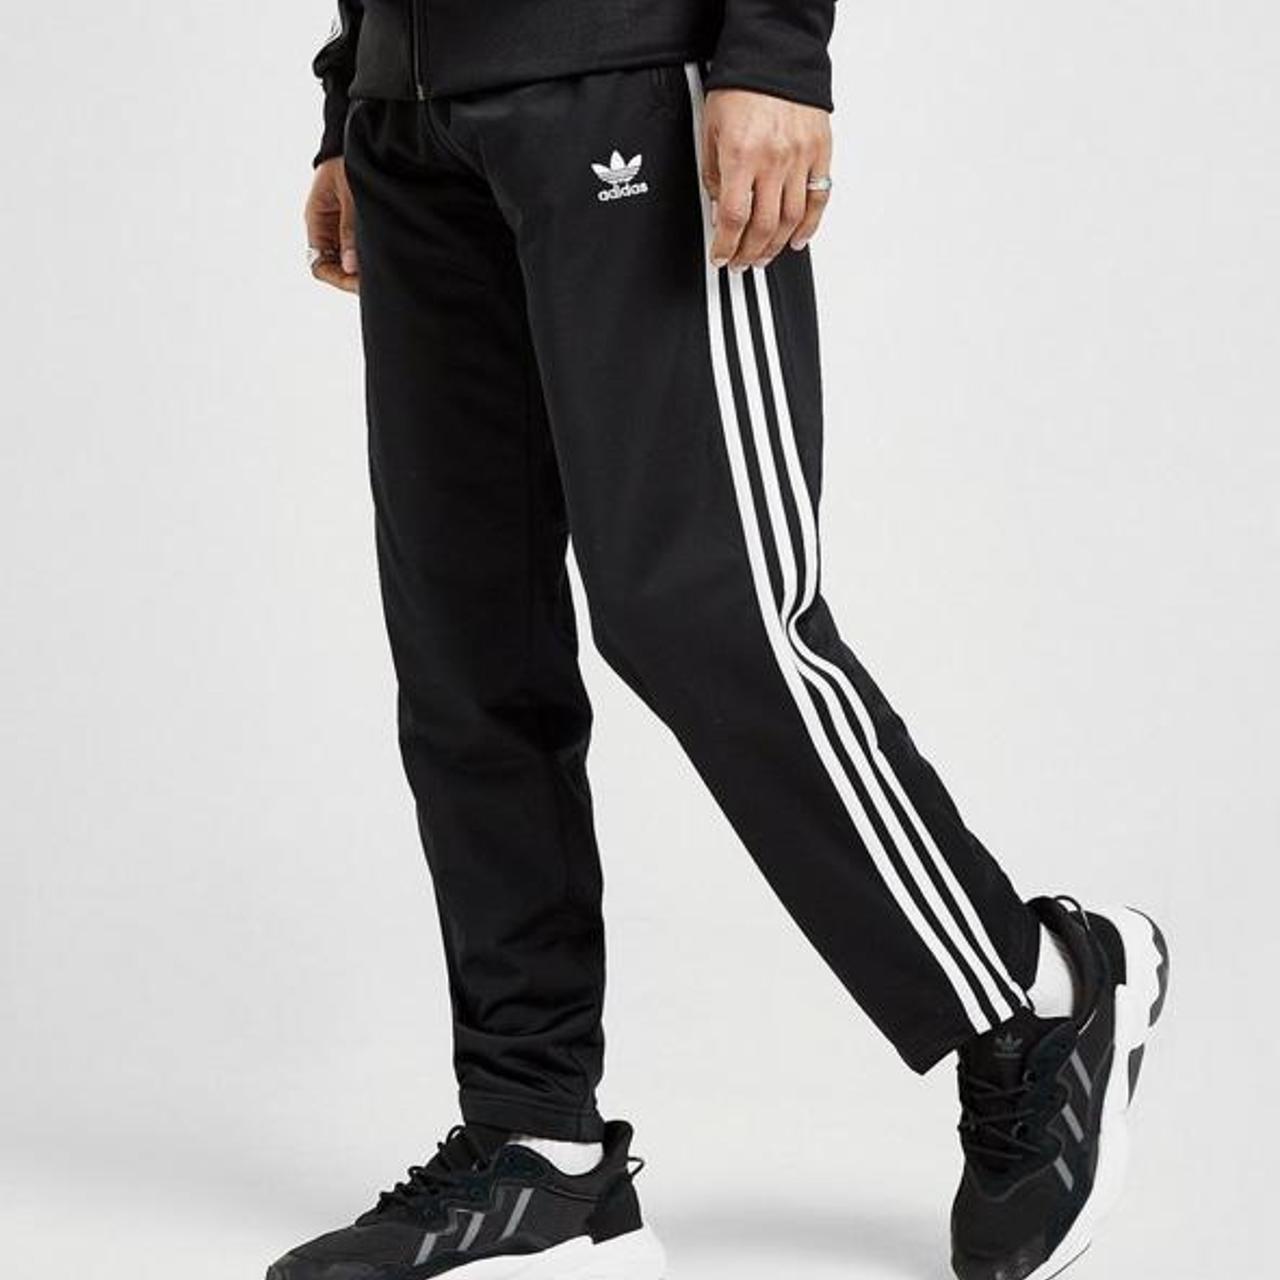 Men’s Adidas originals firebird track pant joggers... - Depop